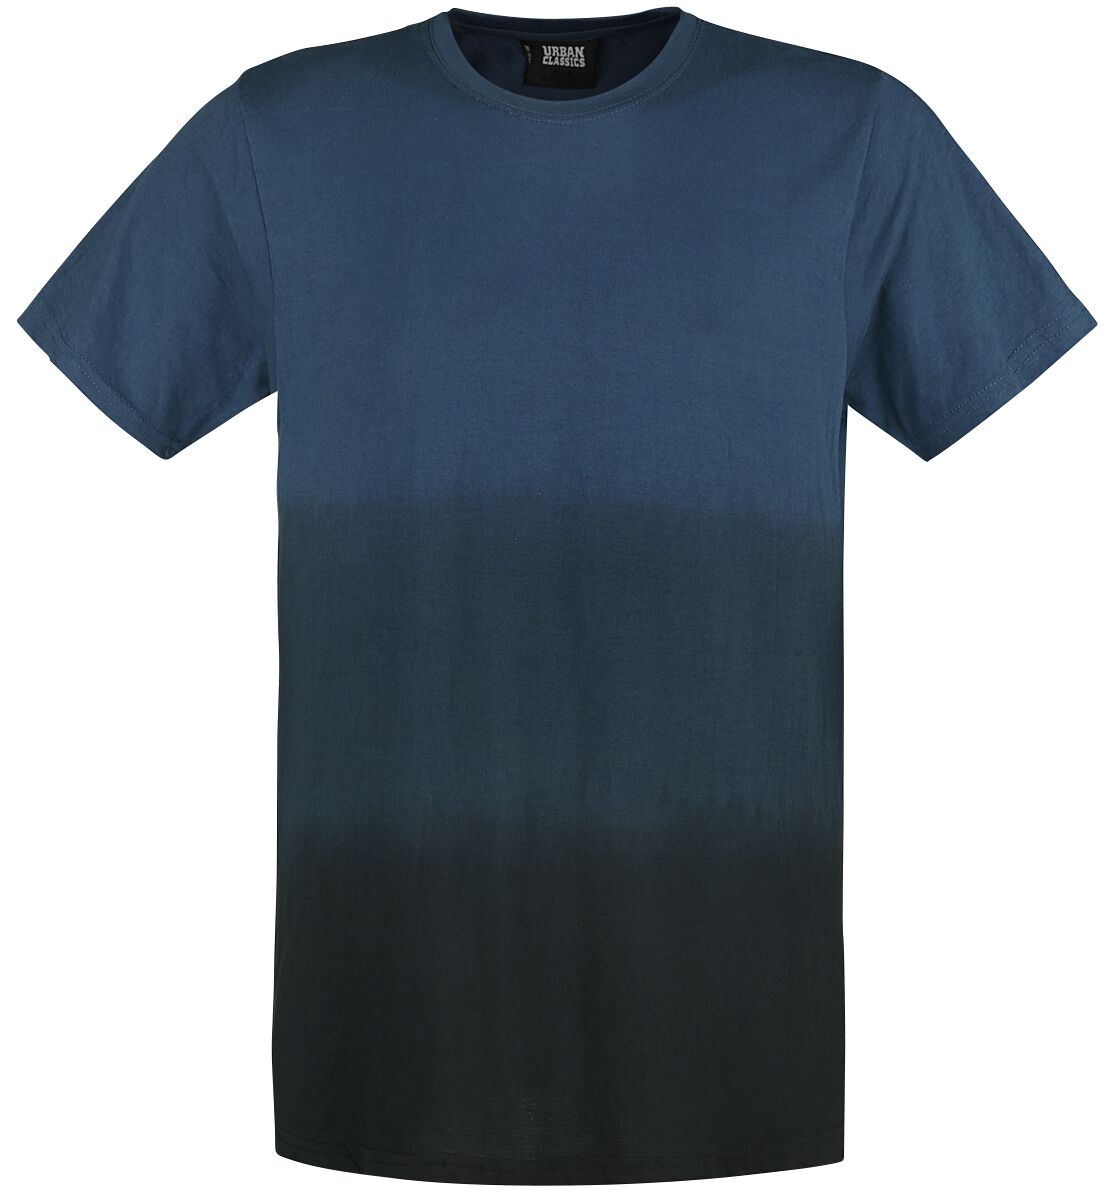 Urban Classics T-Shirt - Dip Dyed Tee - S bis XL - für Männer - Größe S - schwarz/blau